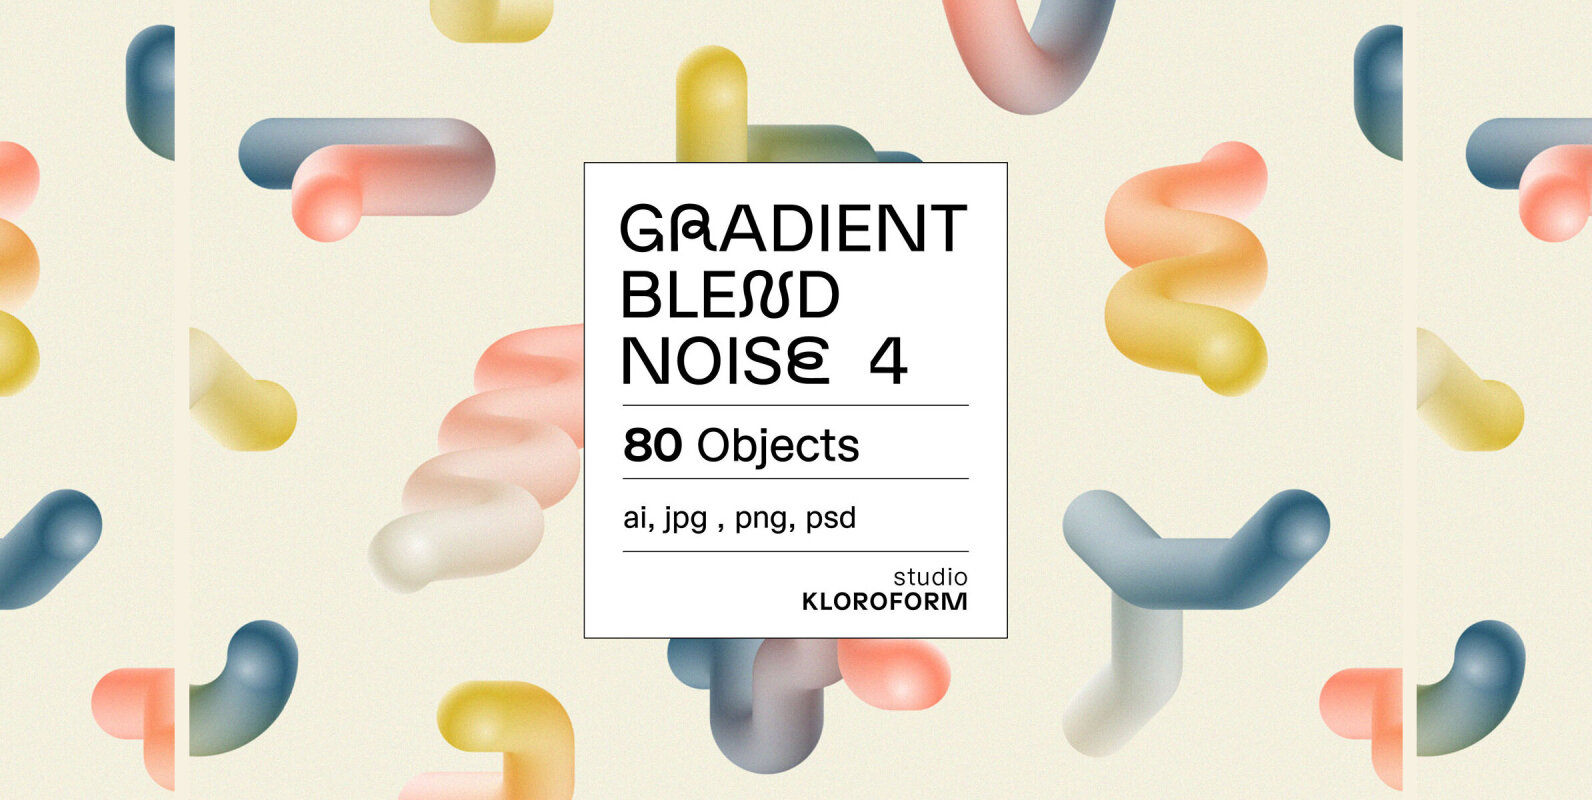 Gradient Blend Noise 4